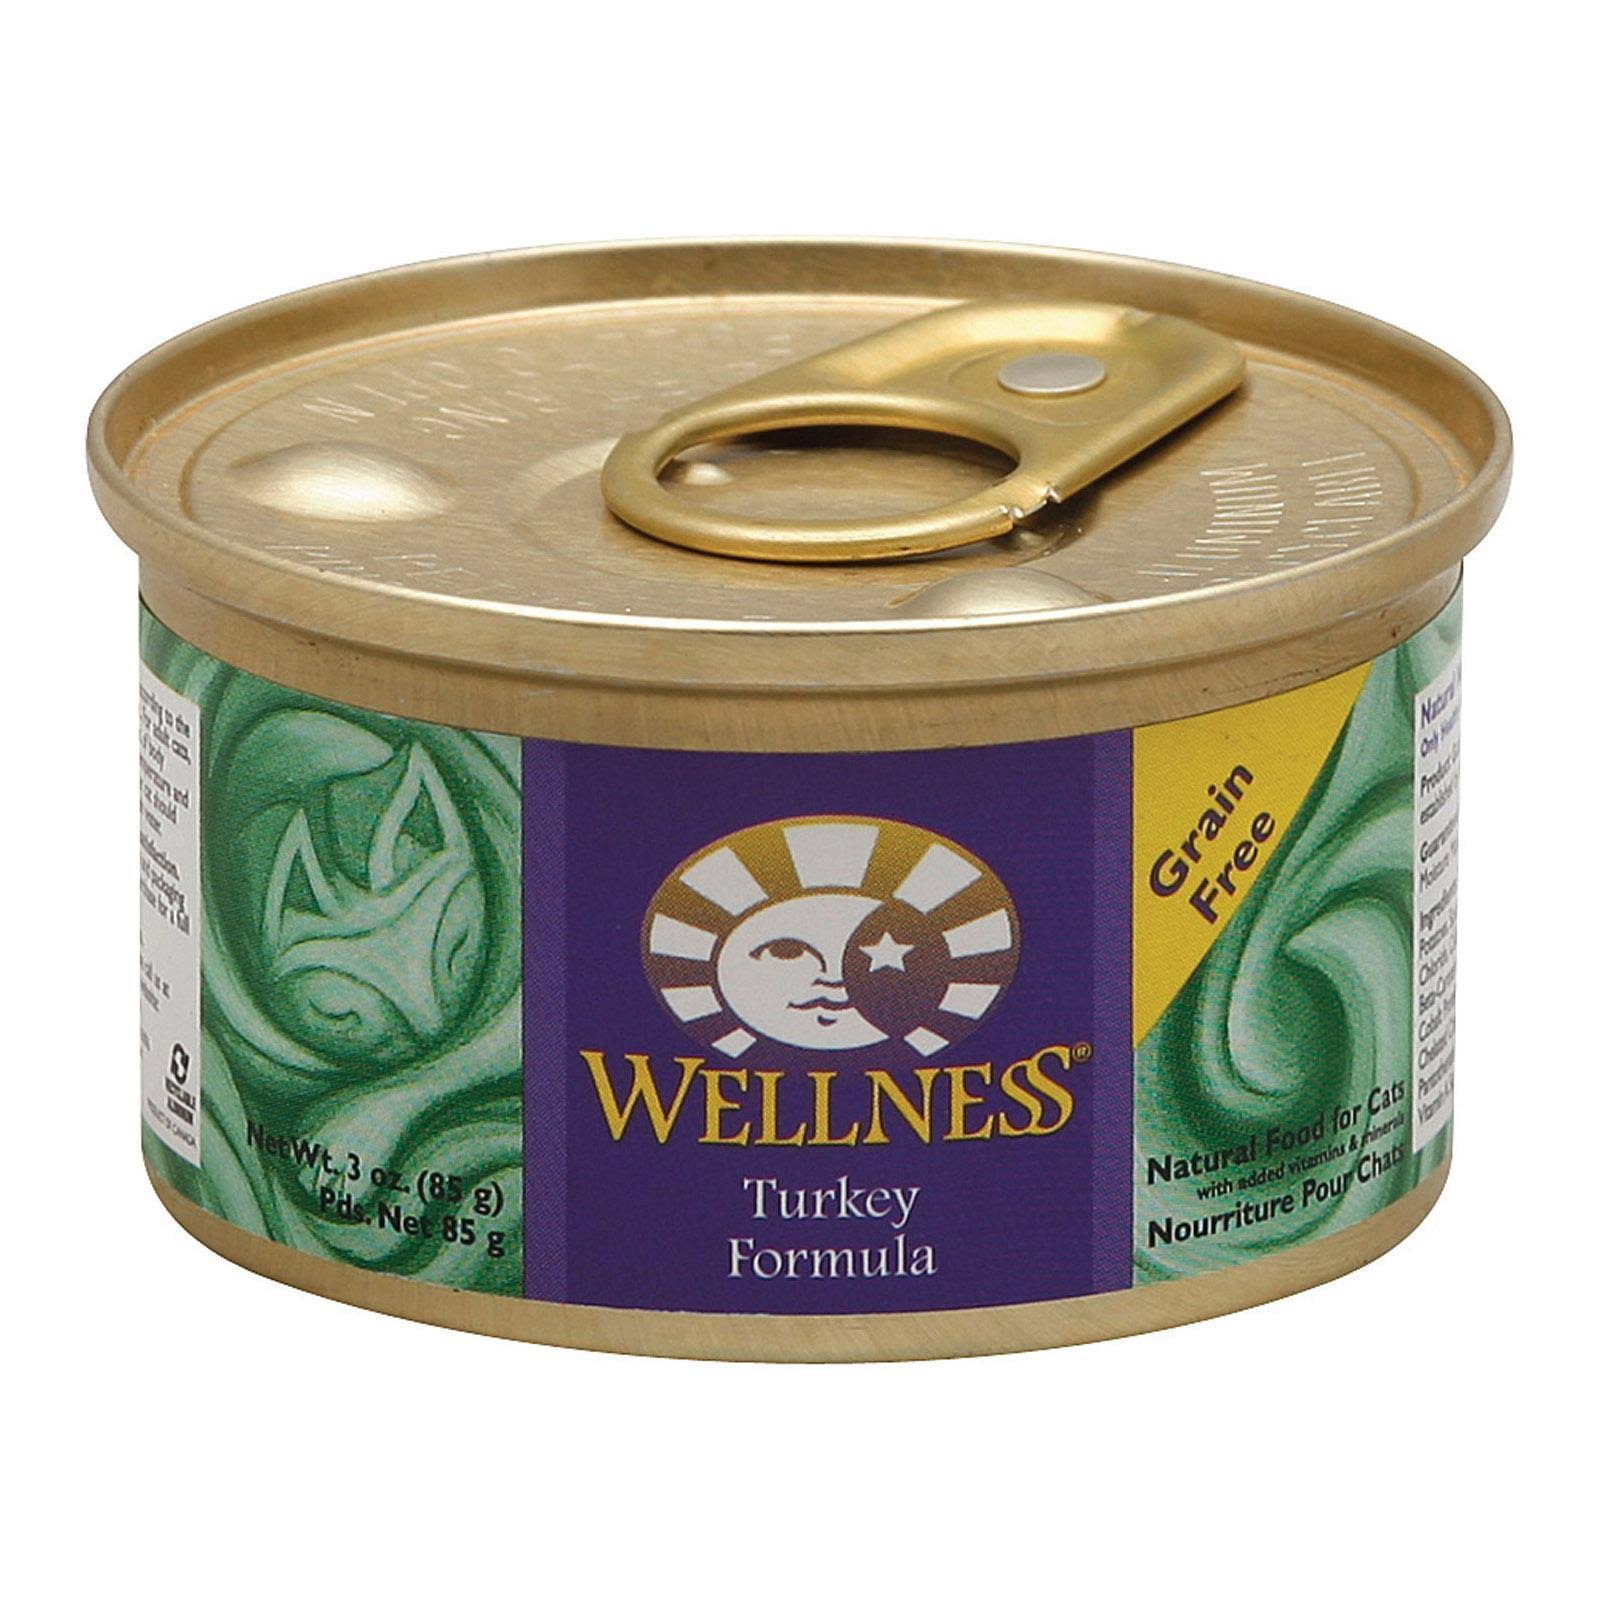 Wellness Cat Food - Turkey Formula, 3oz